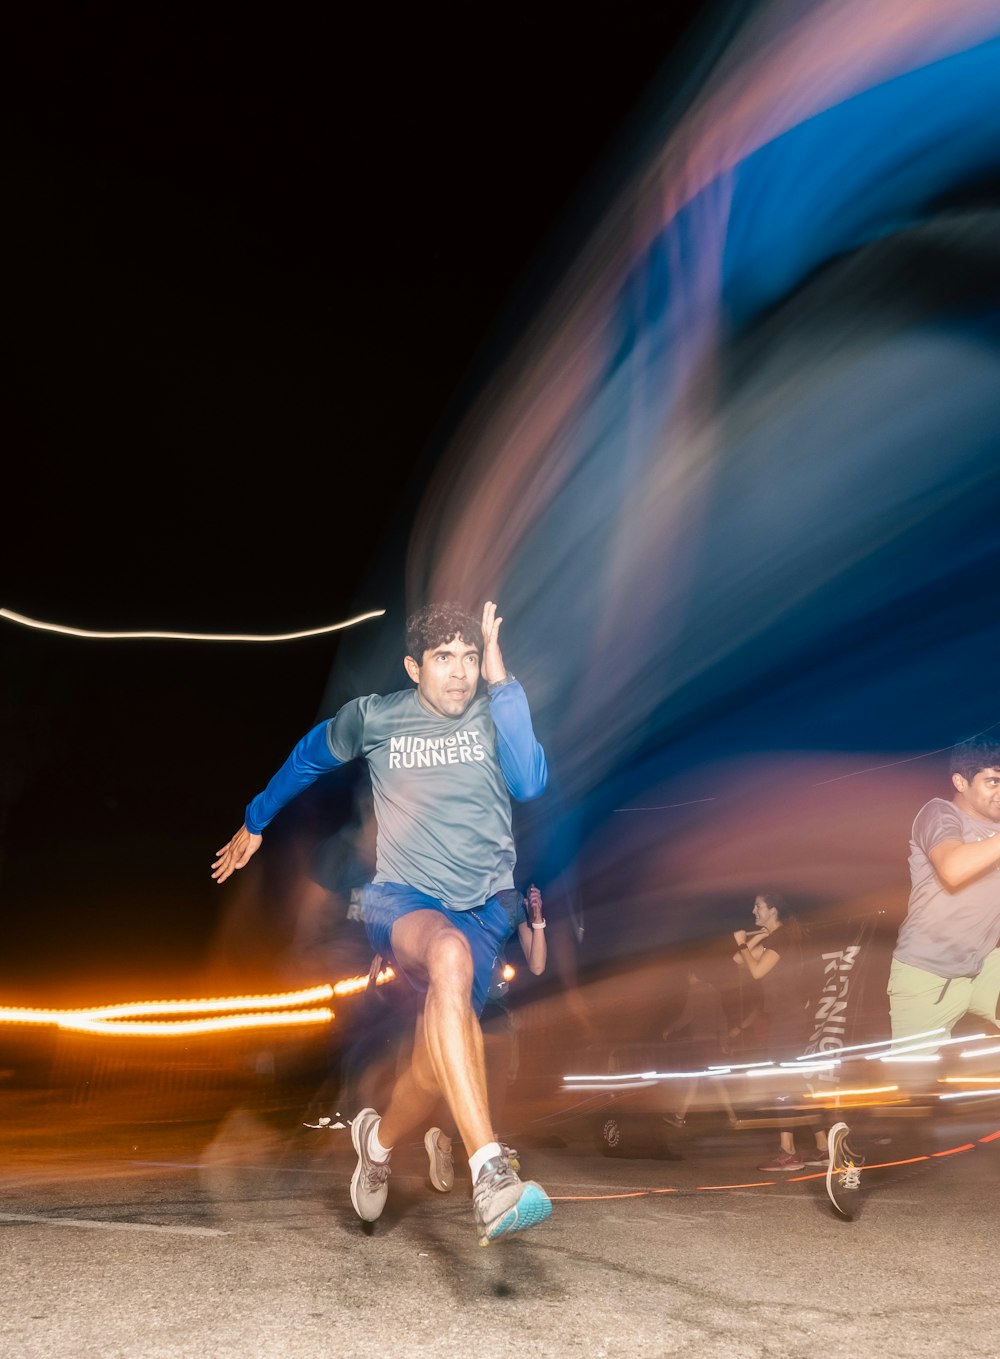 una foto borrosa de un hombre corriendo de noche